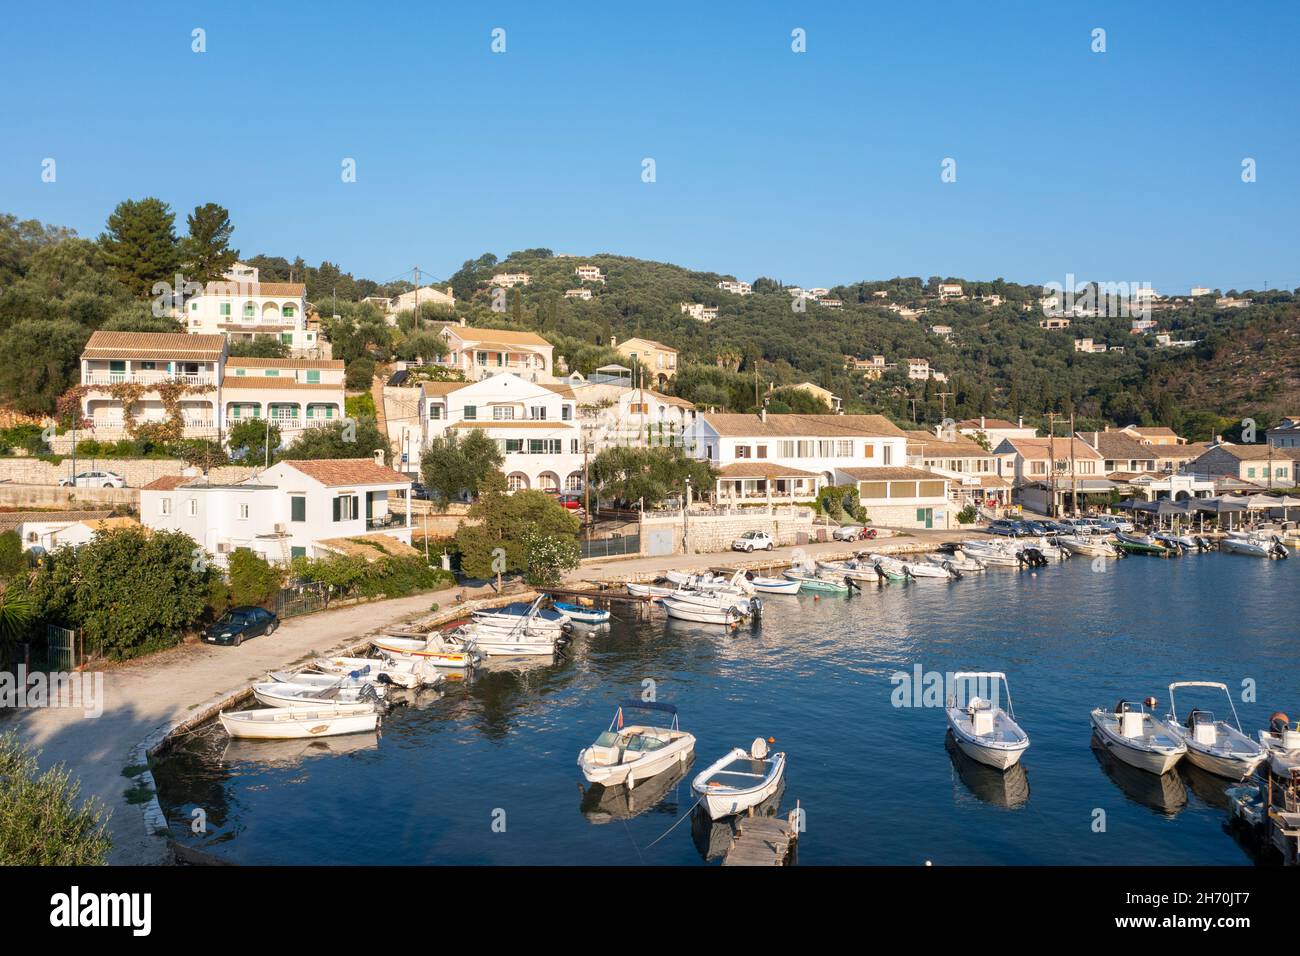 Vista aérea de Agios Stefanos - un pueblo de pescadores frente al mar, y popular destino turístico, en la costa noreste de Corfú, Islas Jónicas, Grecia Foto de stock